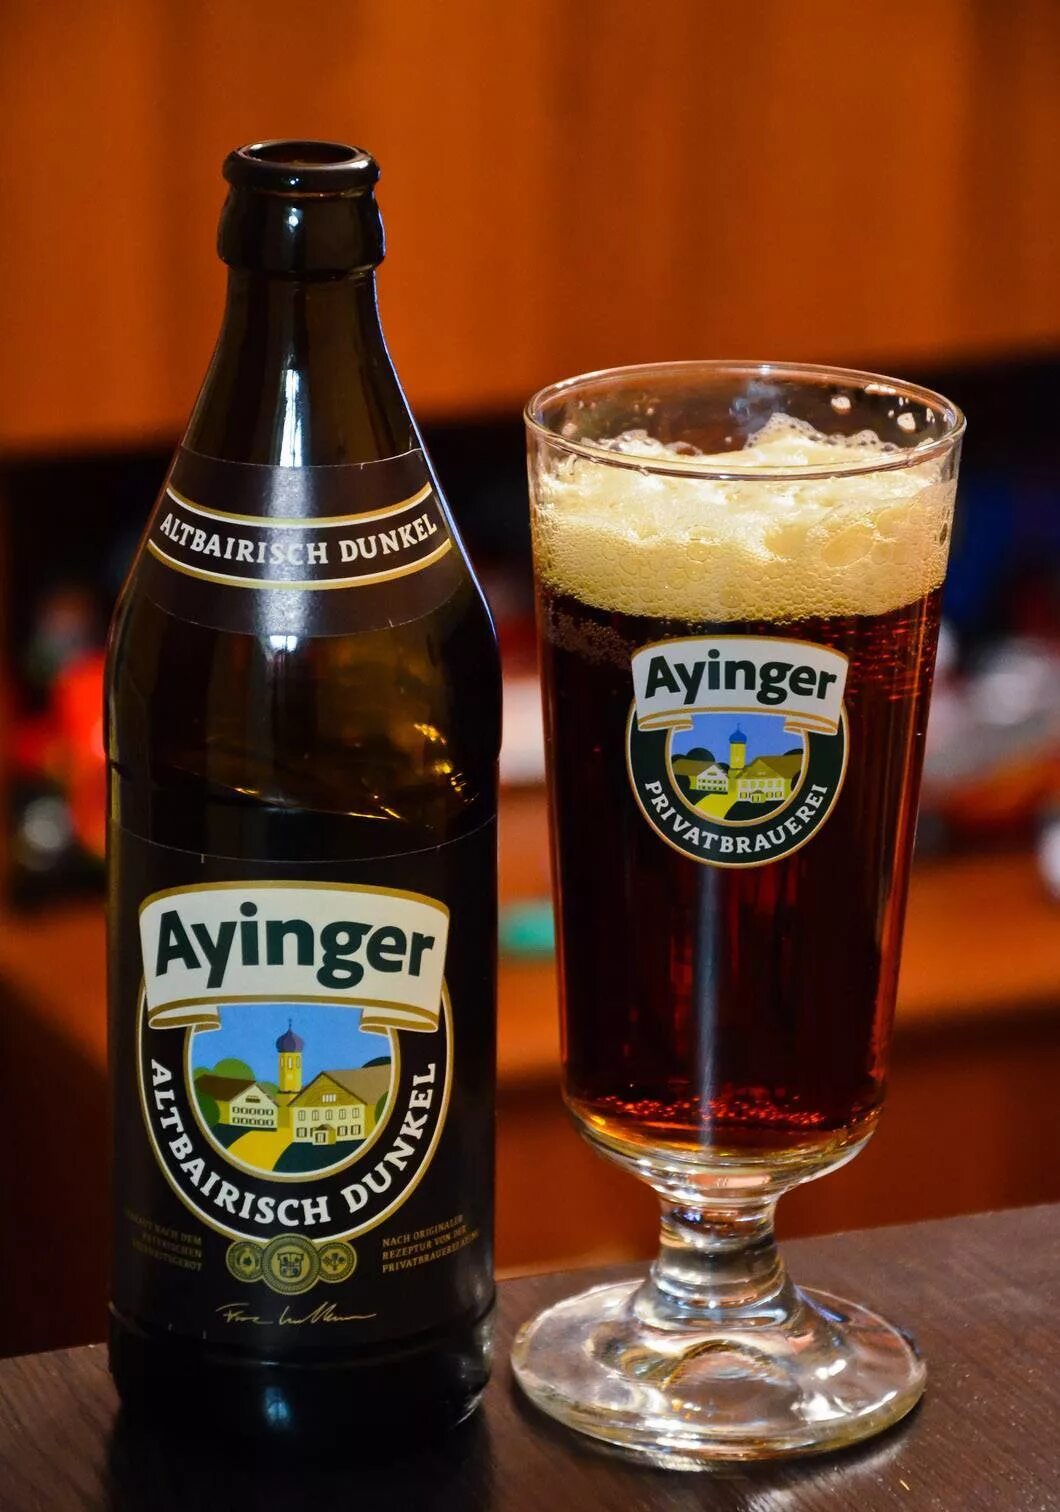 Пиво ayinger купить. Пиво Ayinger Lager. Айингер Альтбайриш. Айнгер Альтбайриш Дункель. Пиво Айингер Альтбайриш Дункель темное.